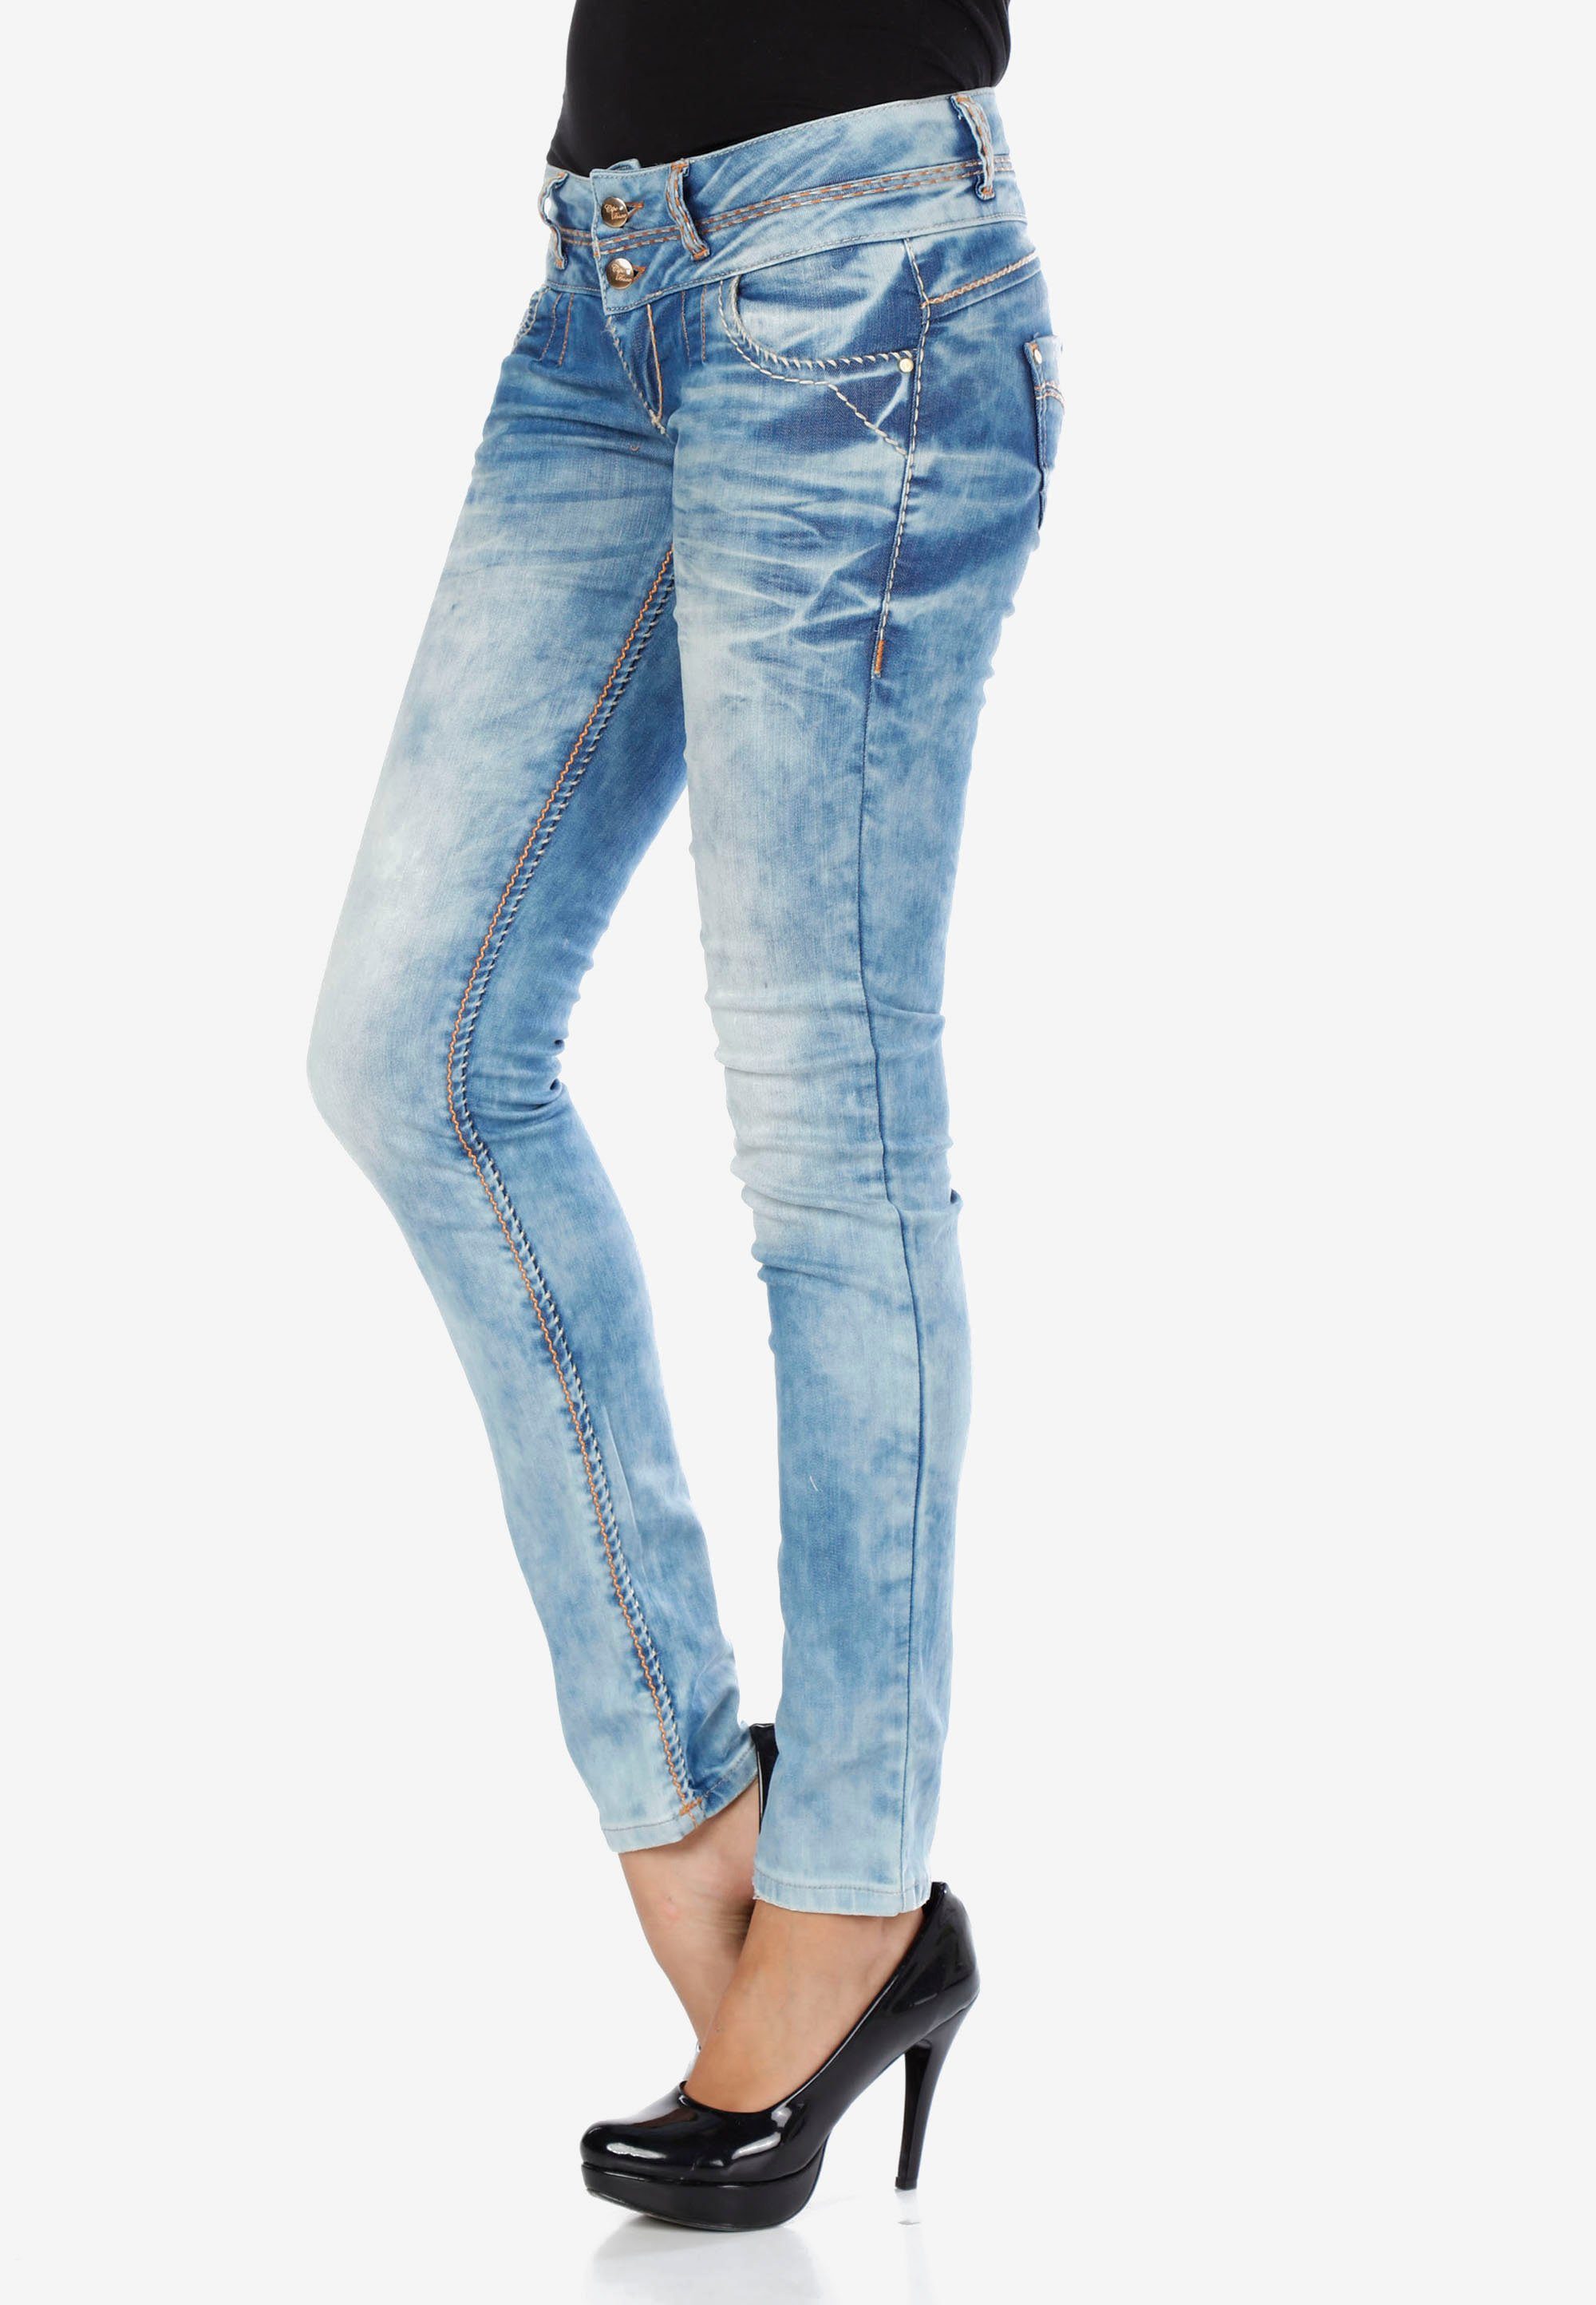 [Serviceverkauf läuft!] Cipo & Baxx trendiger Waschung in Slim-fit-Jeans